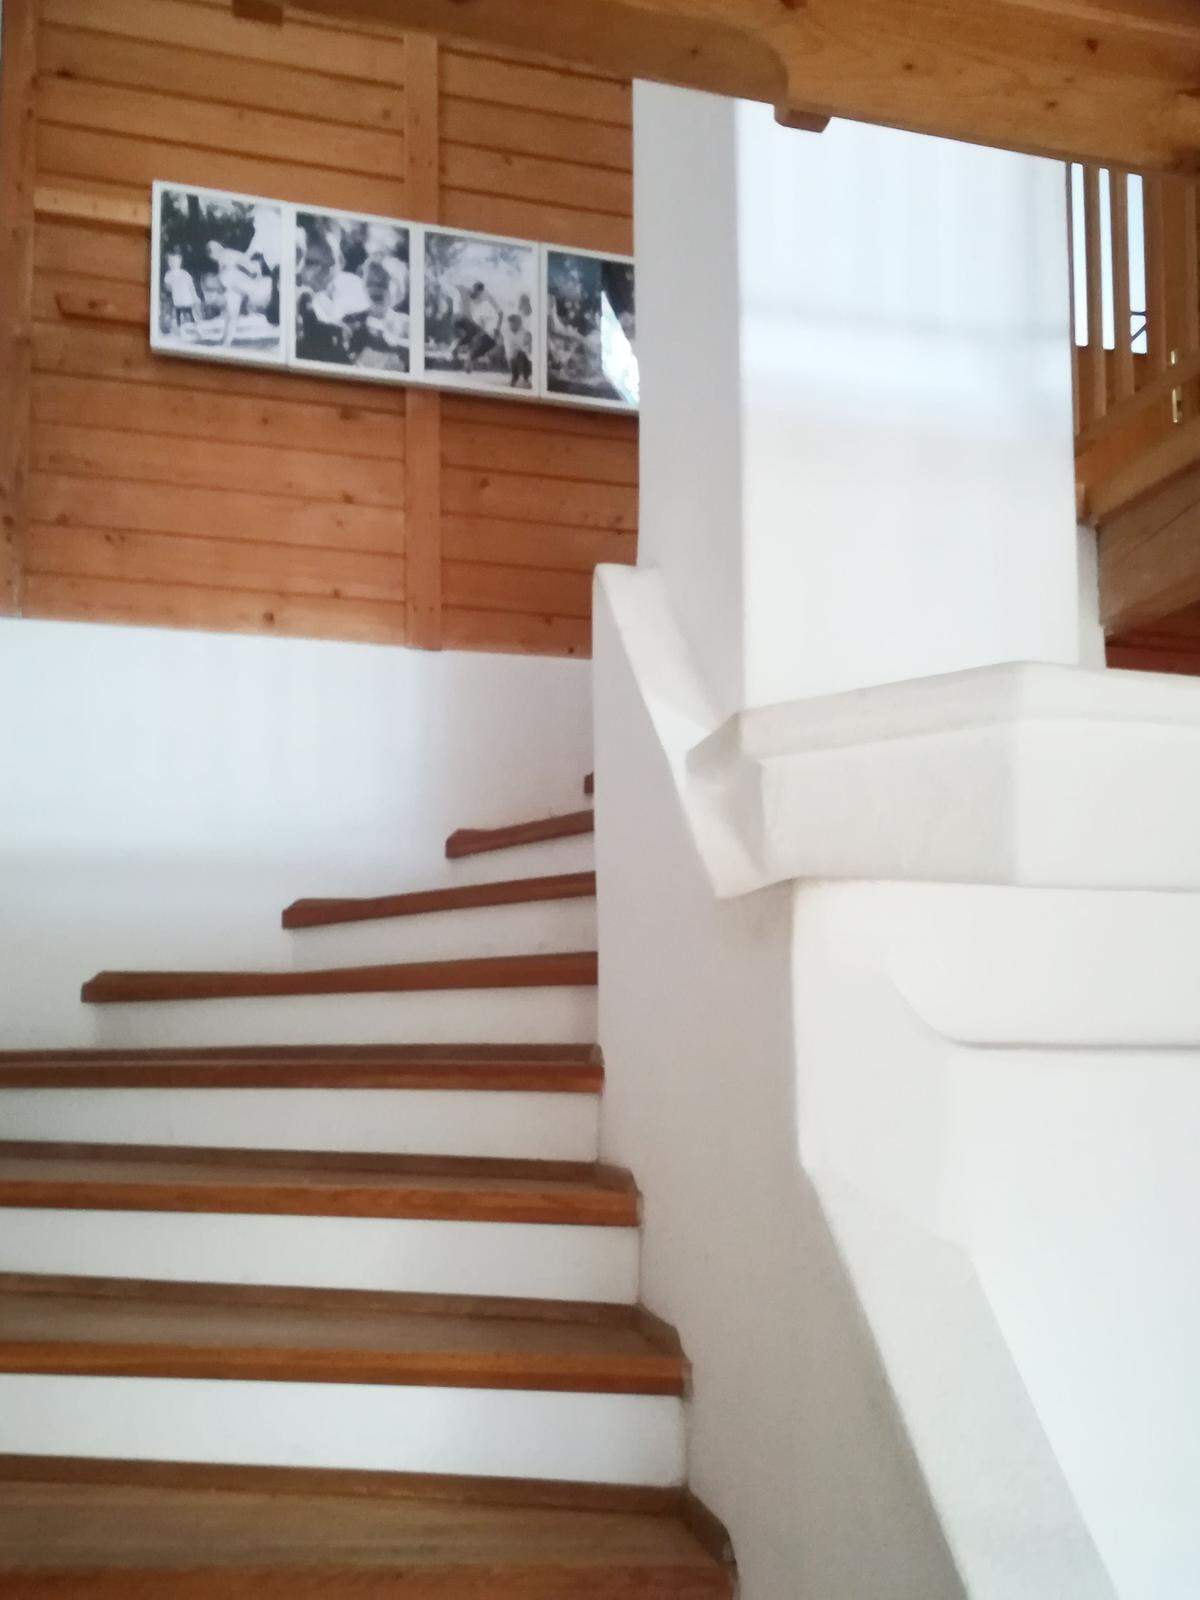 Die Treppe mit kleiner Bildergalerie.